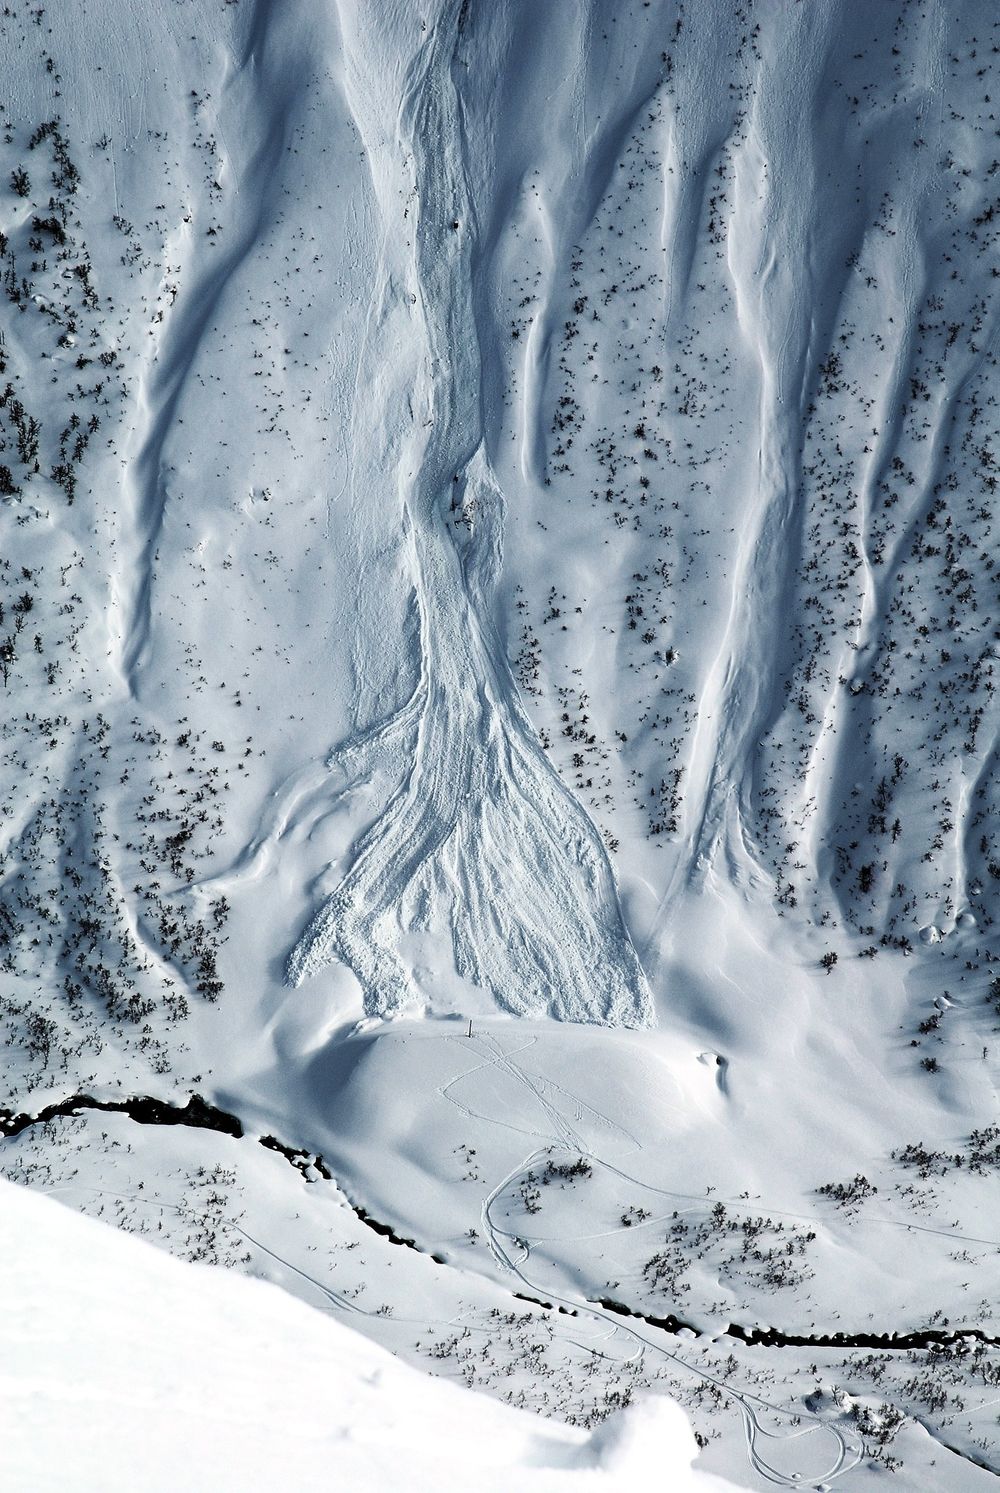 Skredforskning: Resultatet av en kontrollert utløsning av snøskred fra sprengingstårnet ved Norges geotekniske institutts forskningsanlegg ved Ryggfonn i Stryn.vFoto: Krister Kristensen, NGI